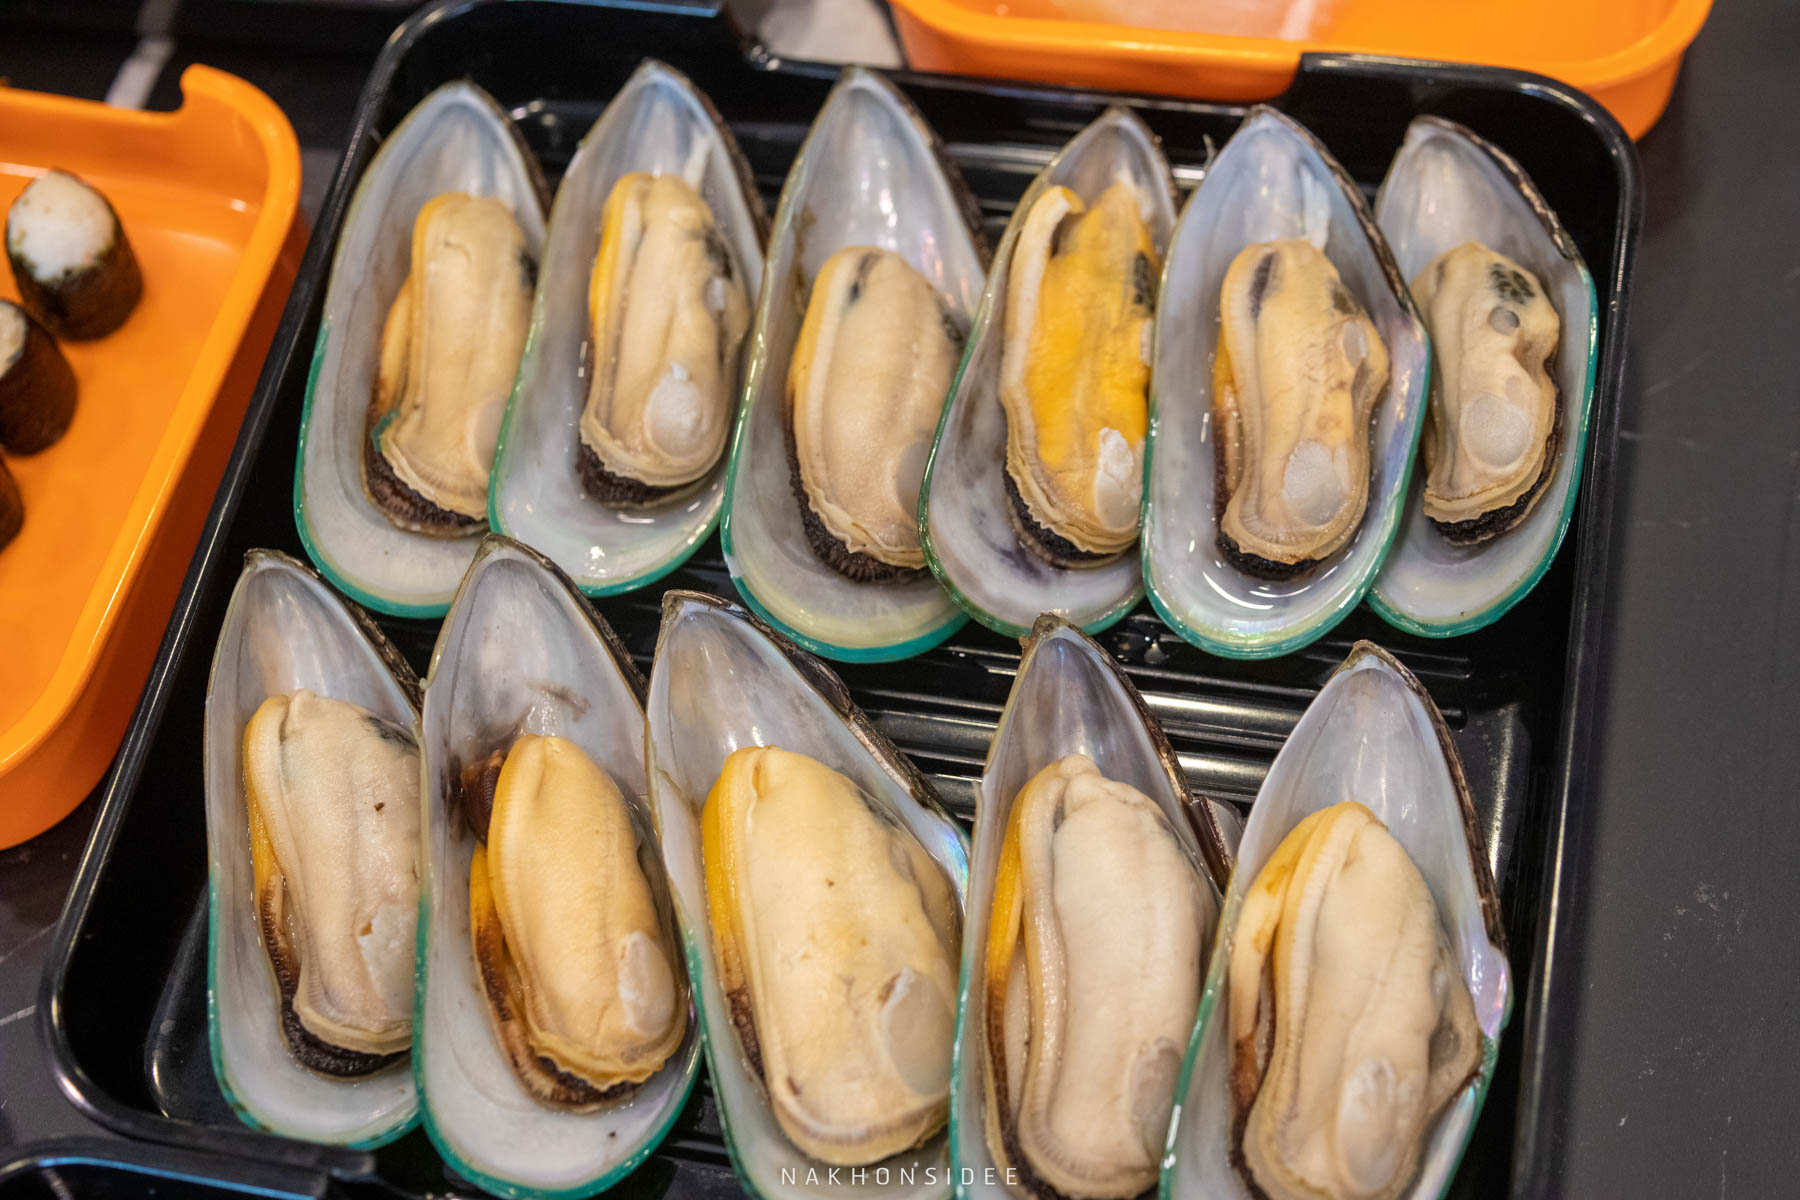 หอยแมลงภู่นิวซีแลนด์  ชาบู,ปิ้งย่าง,อาหารญี่ปุ่น,อู๊ดเป็นต่อพรีเมี่ยม